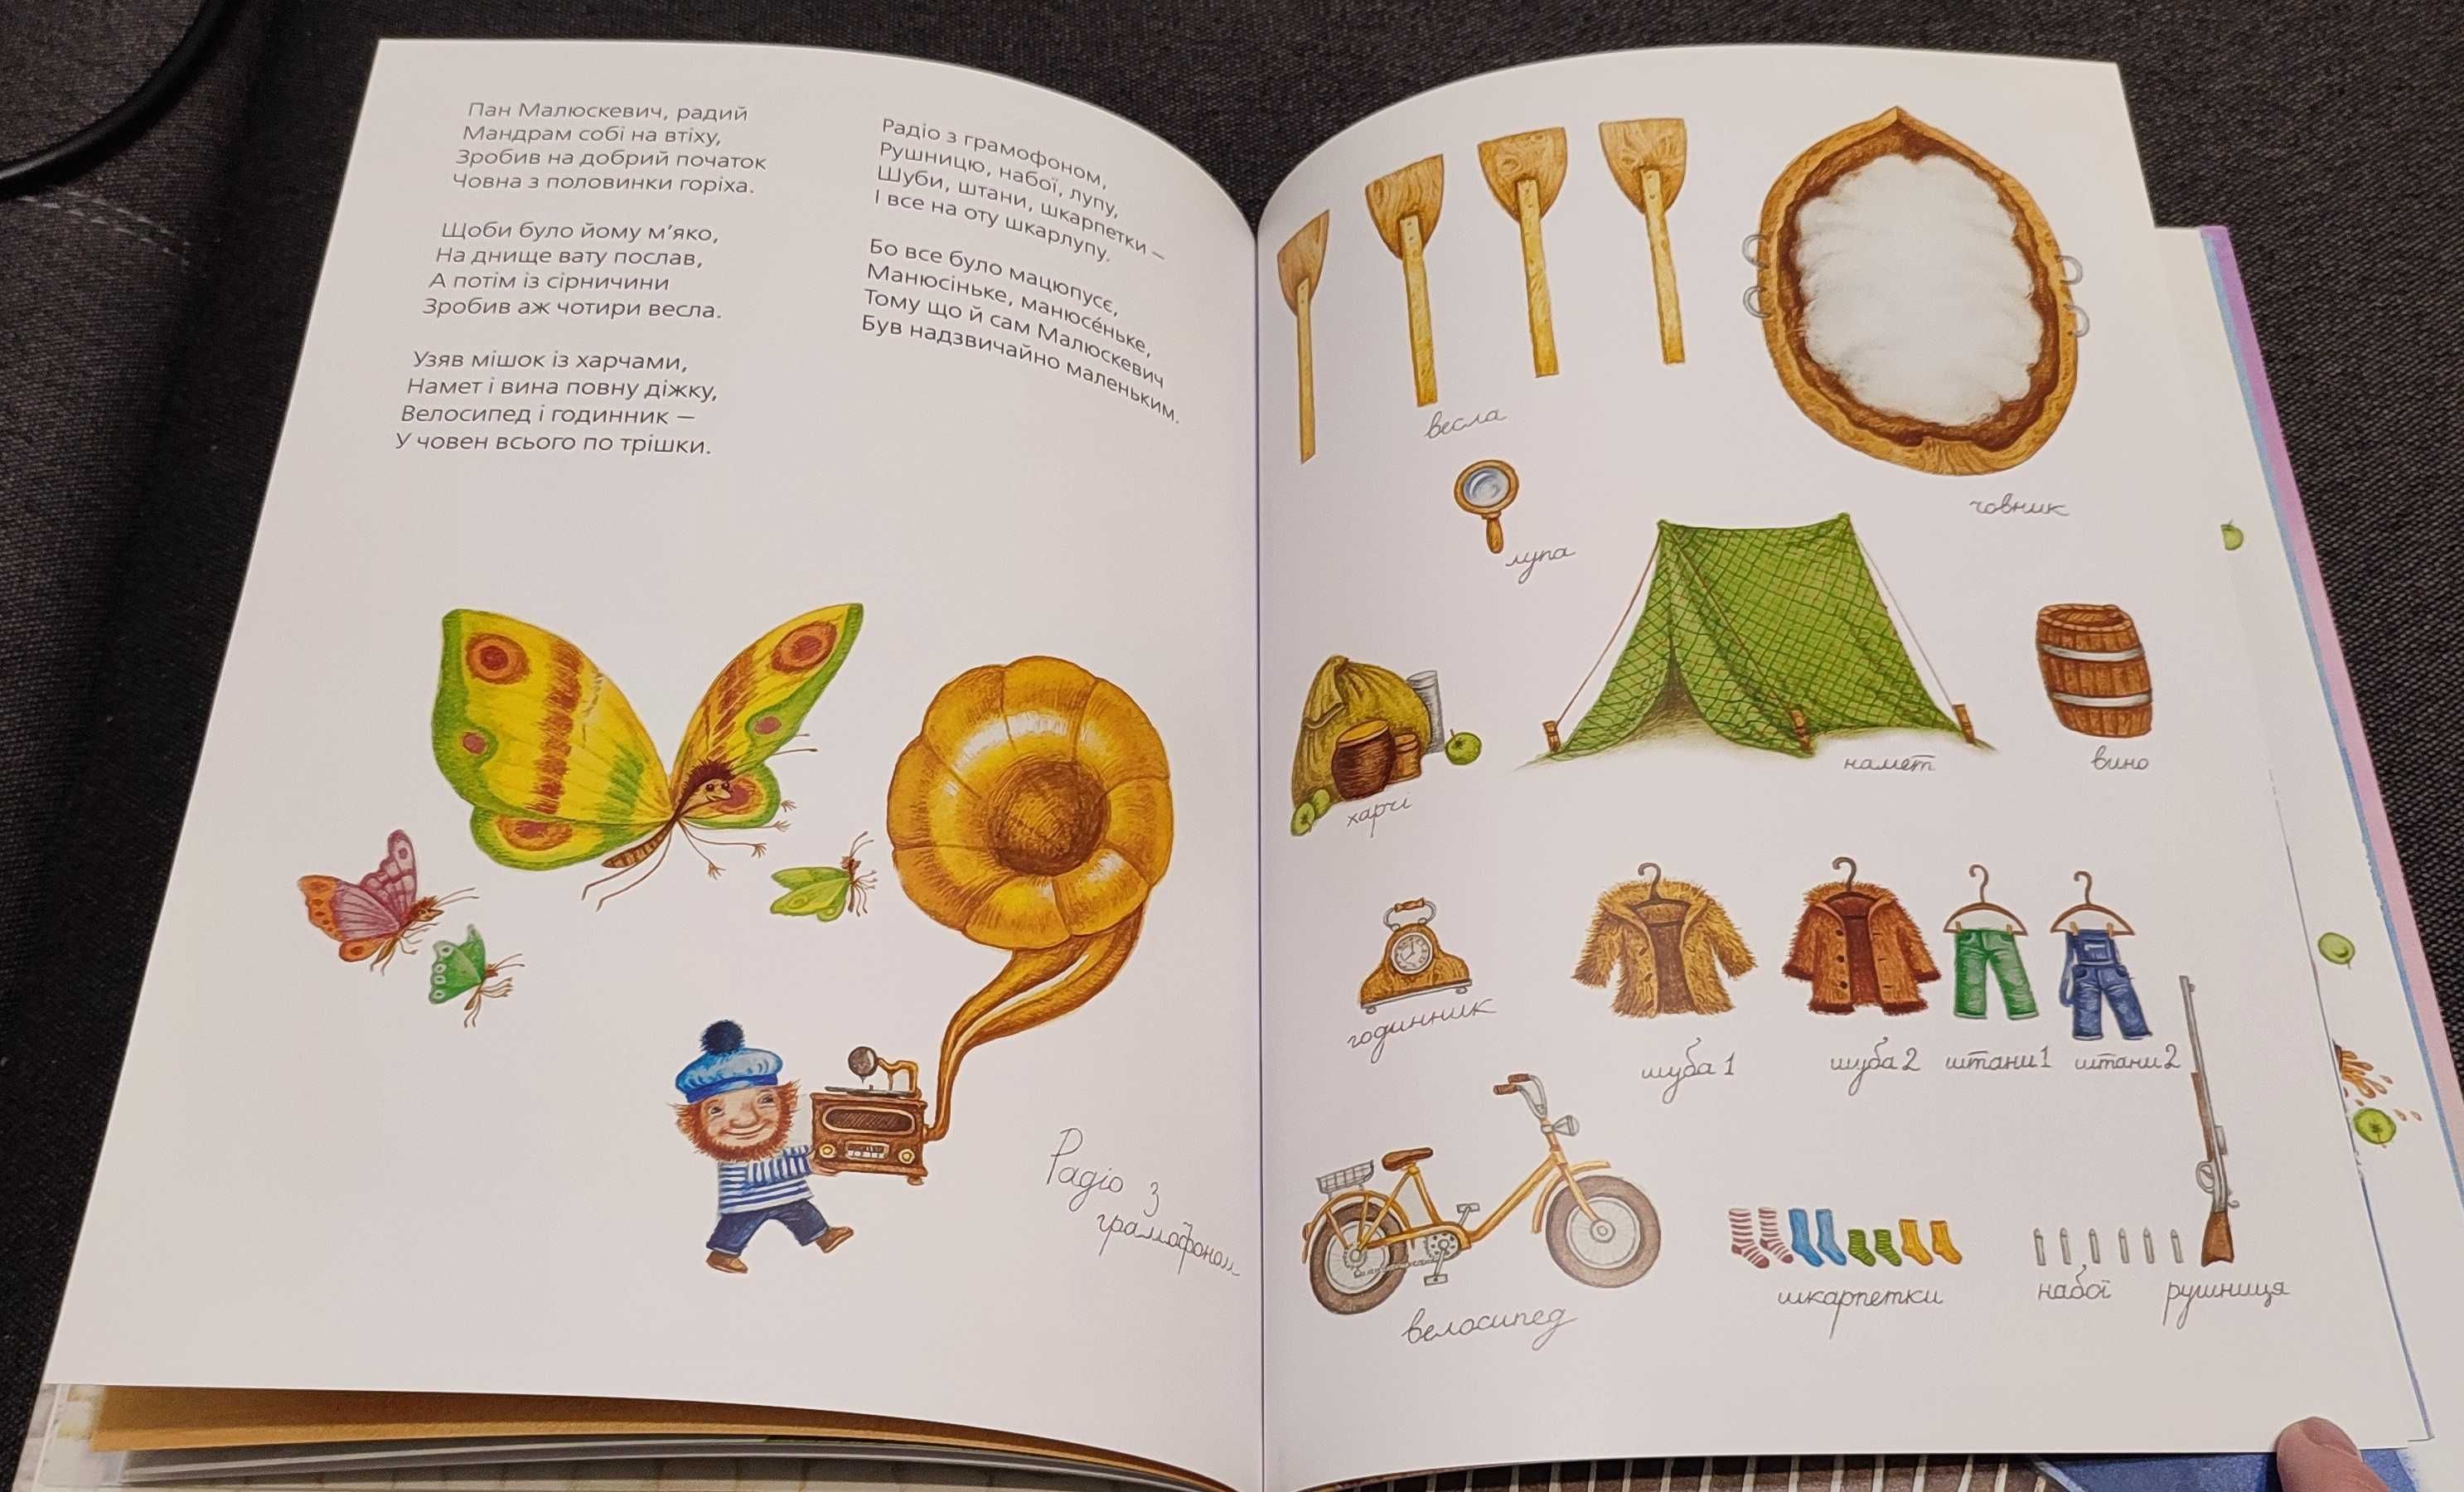 Нова чарівна книга "Слон Трубальський. Вірші для дітей"